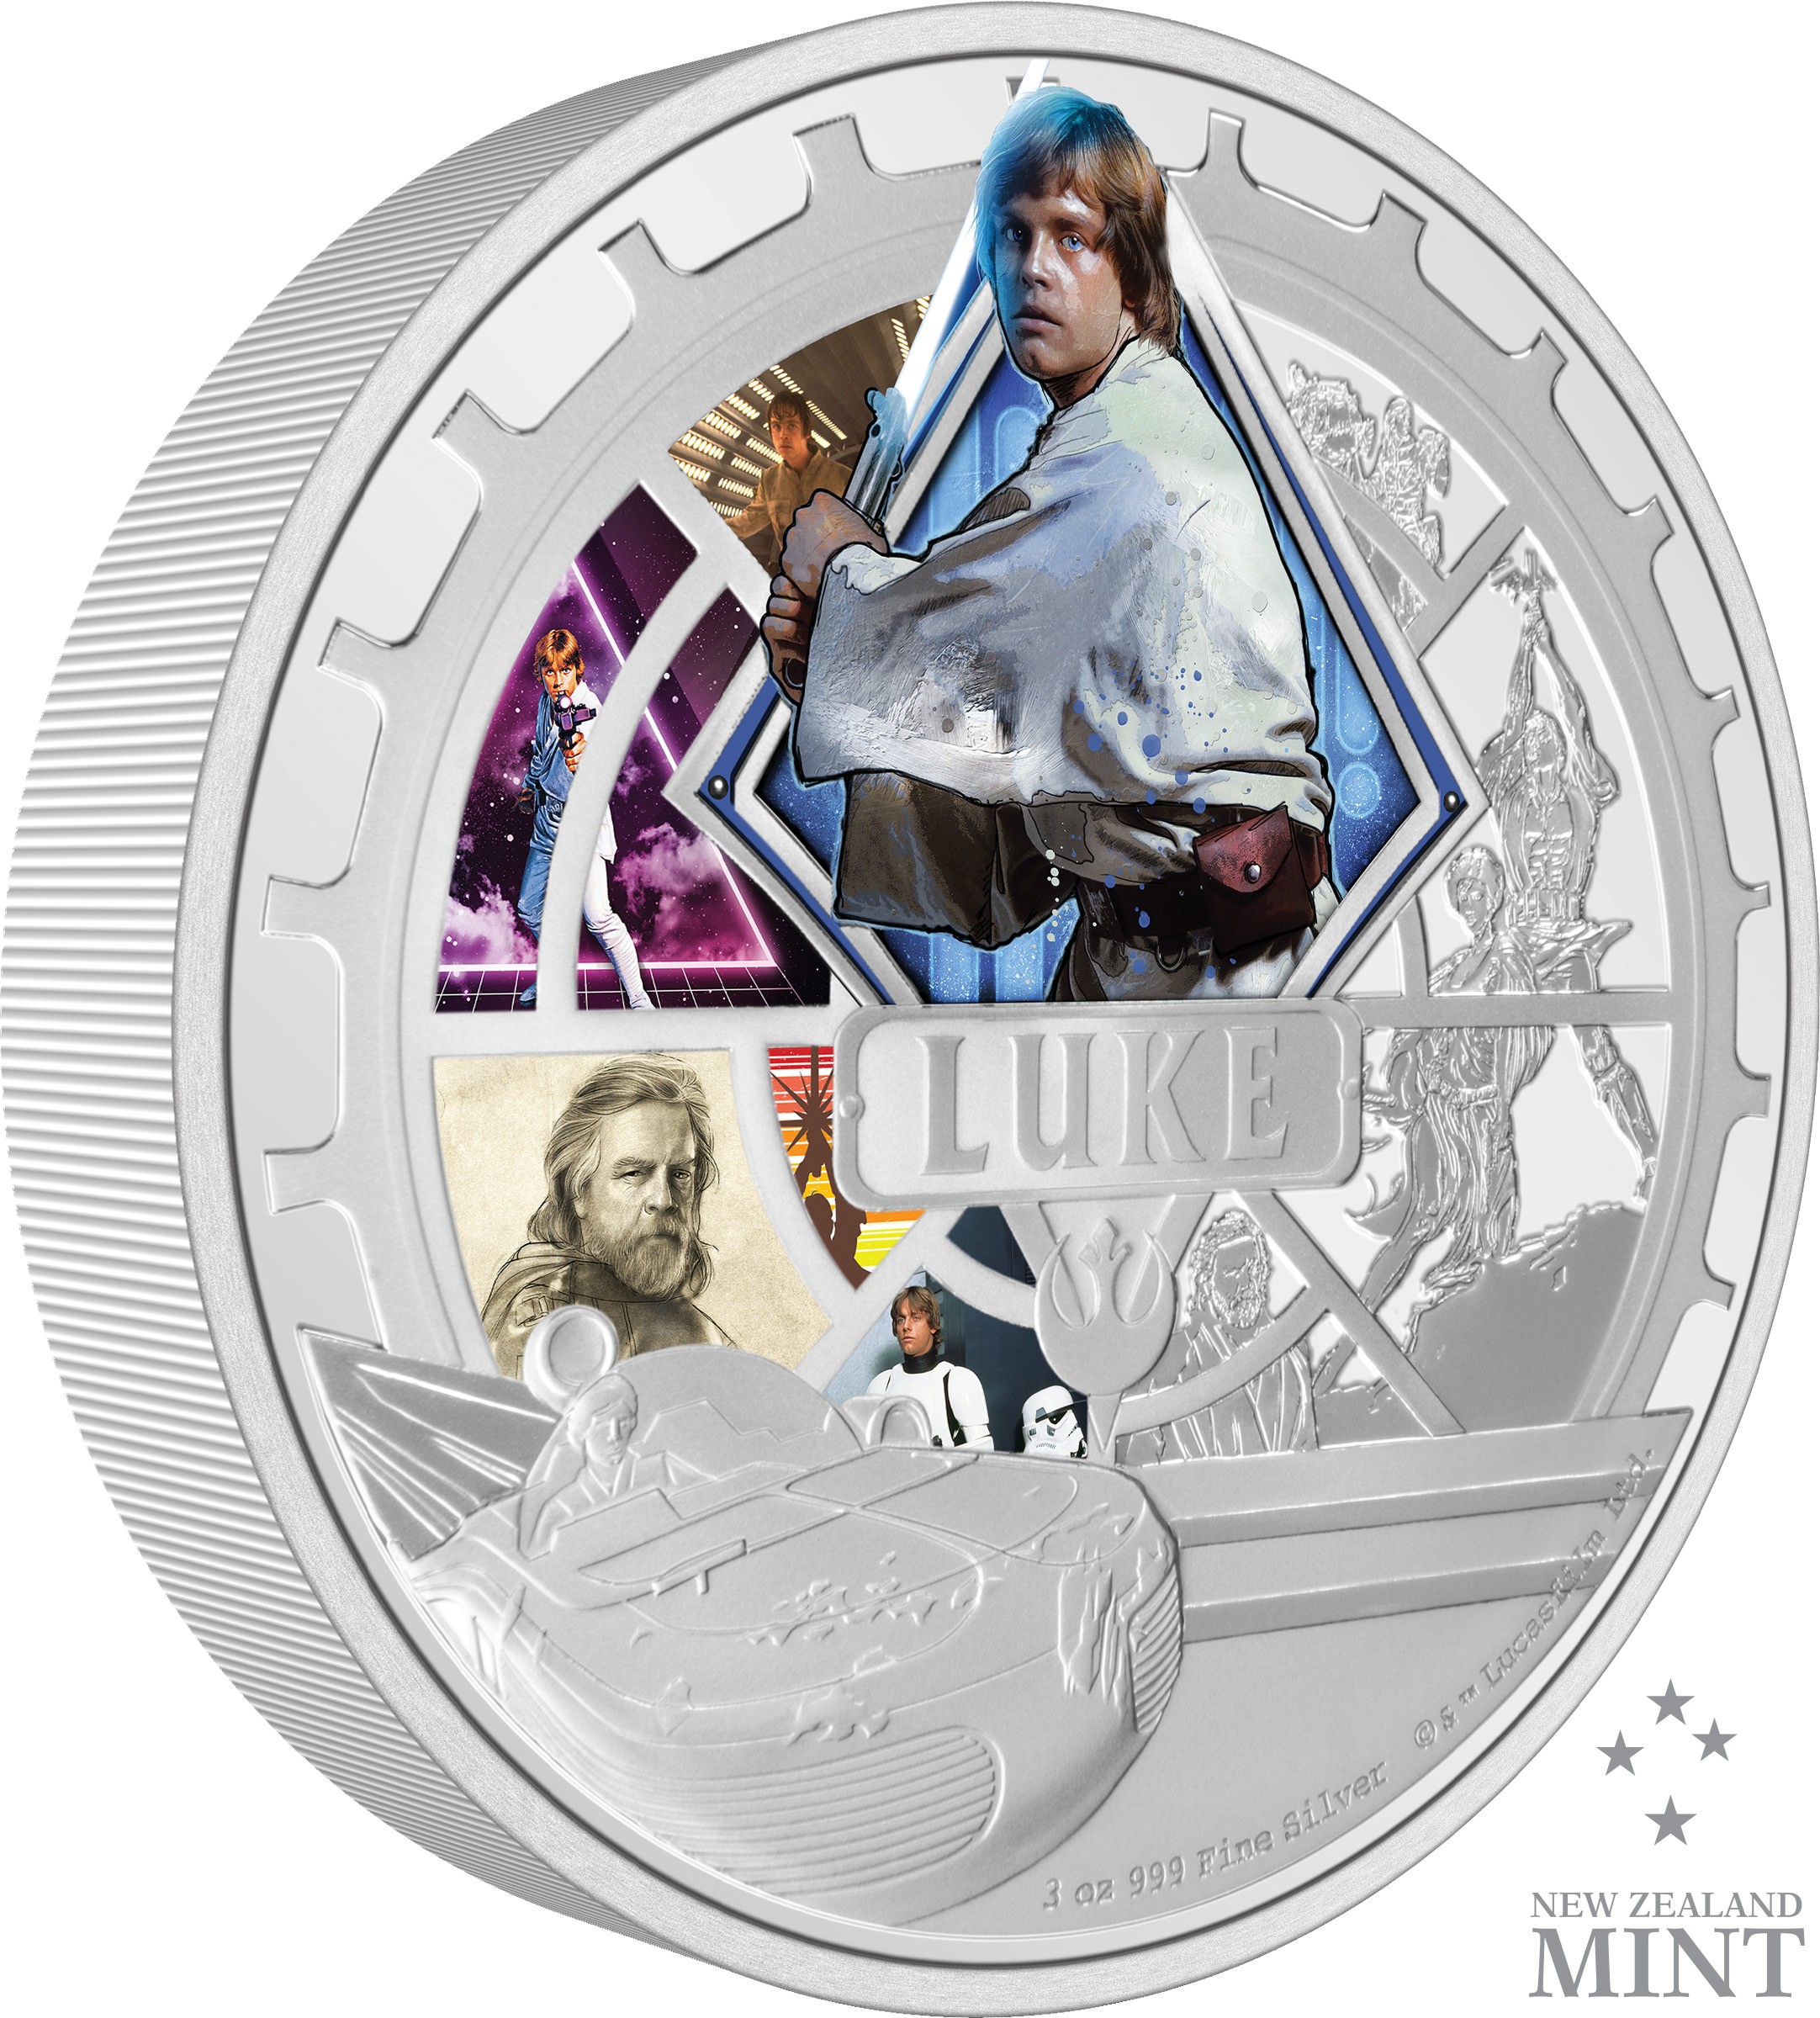 Luke Skywalker™ 3oz Silver Coin- Prototype Shown